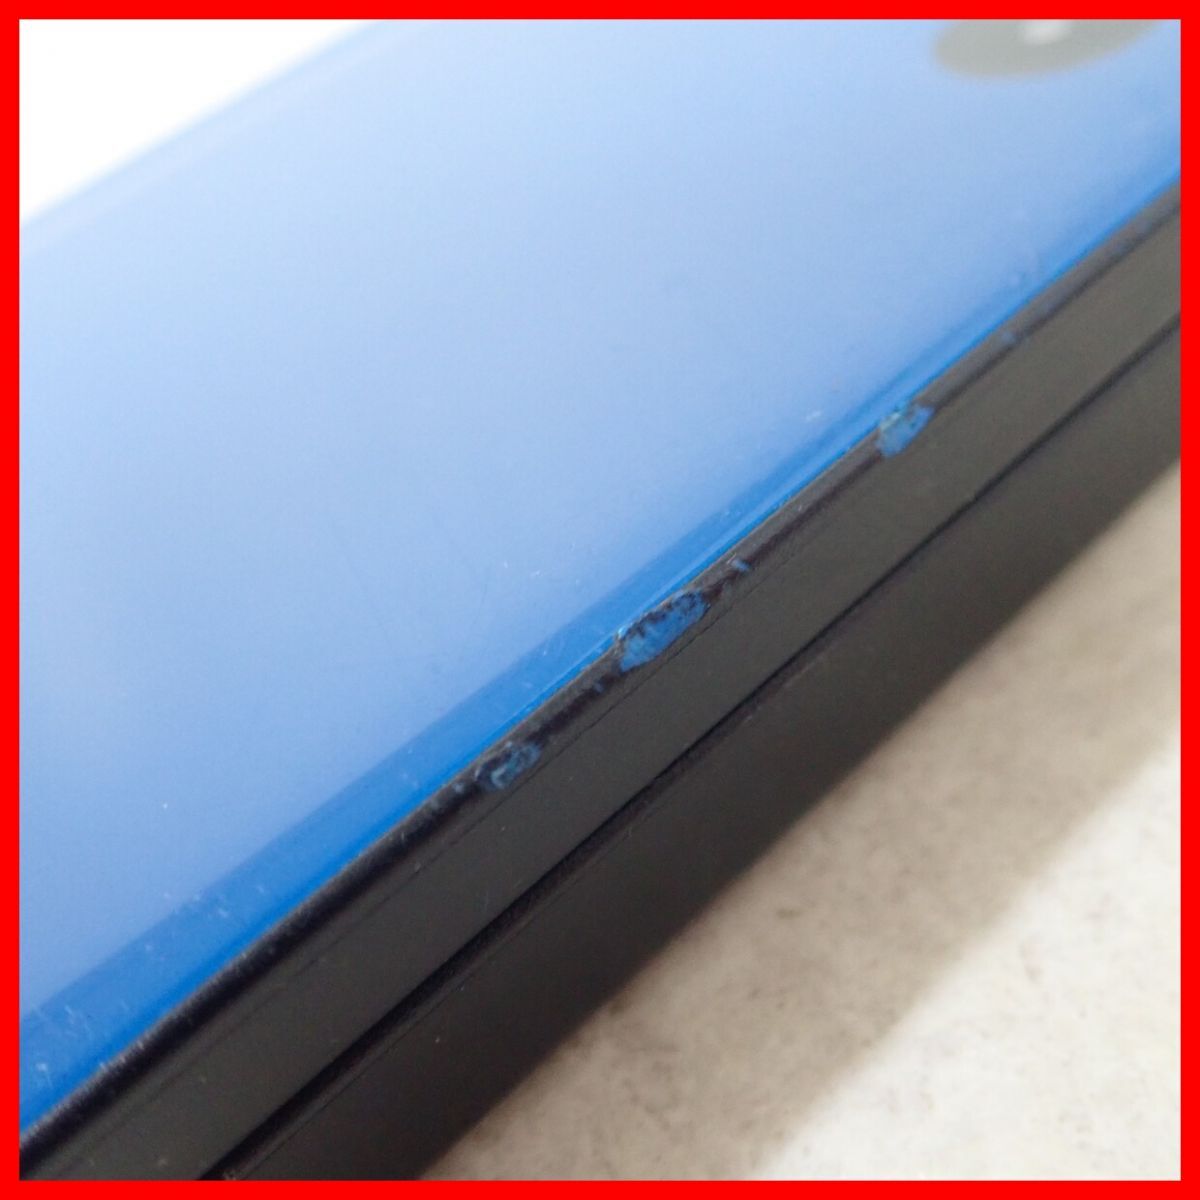  Nintendo DSiLL корпус UTL-001 голубой / wine red / темно-коричневый 6 шт. совместно комплект Nintendo Junk [10